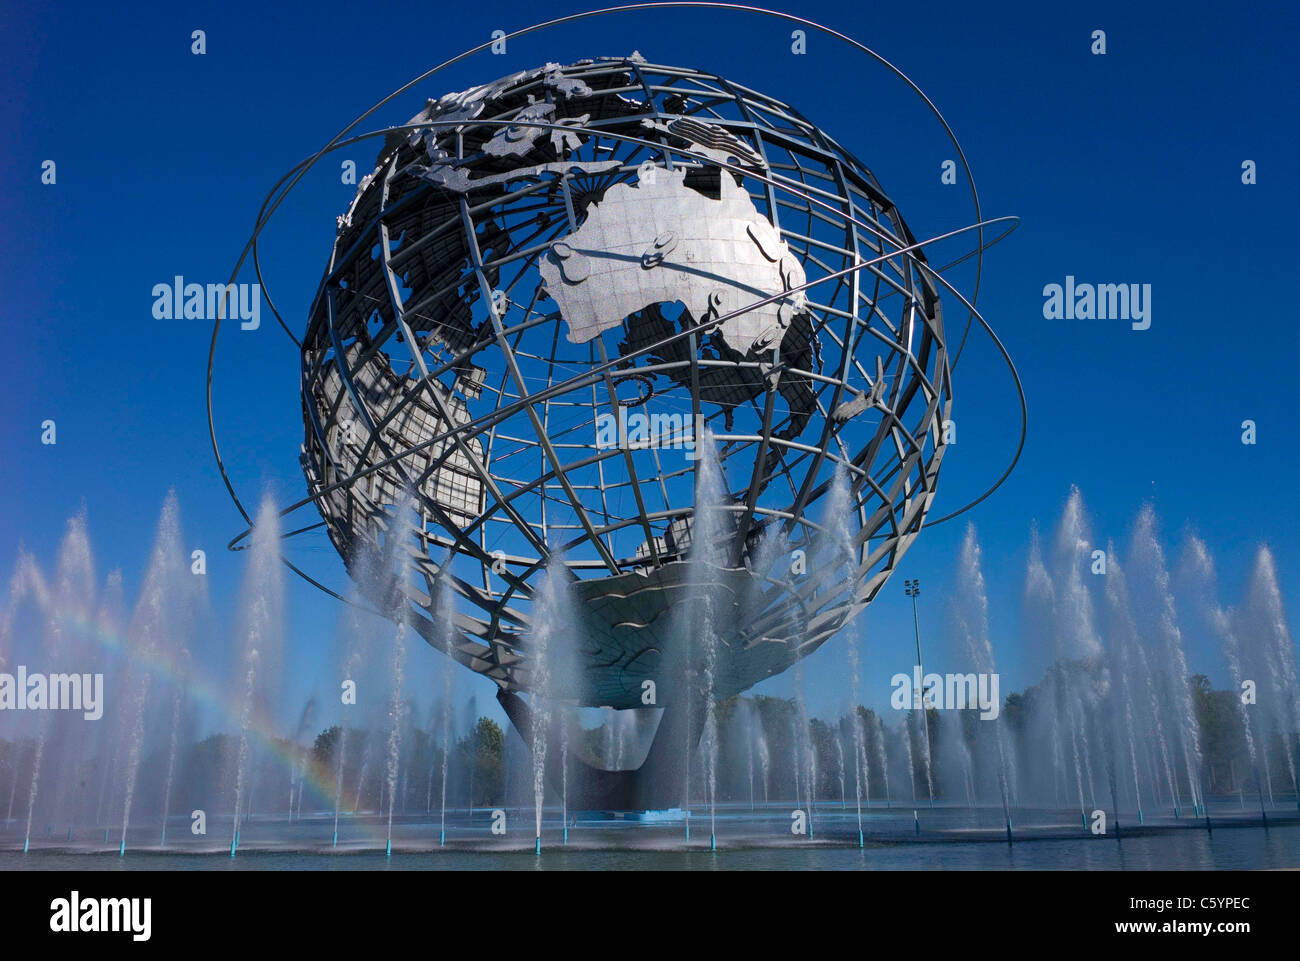 Sonnenuntergang auf der Unisphere Welt fair uns Stahl NY New York Big Apple Tourismus vergangener Zeiten Brunnen Wasserstrahlen Sonne Globus Sphe bündeln Stockfoto